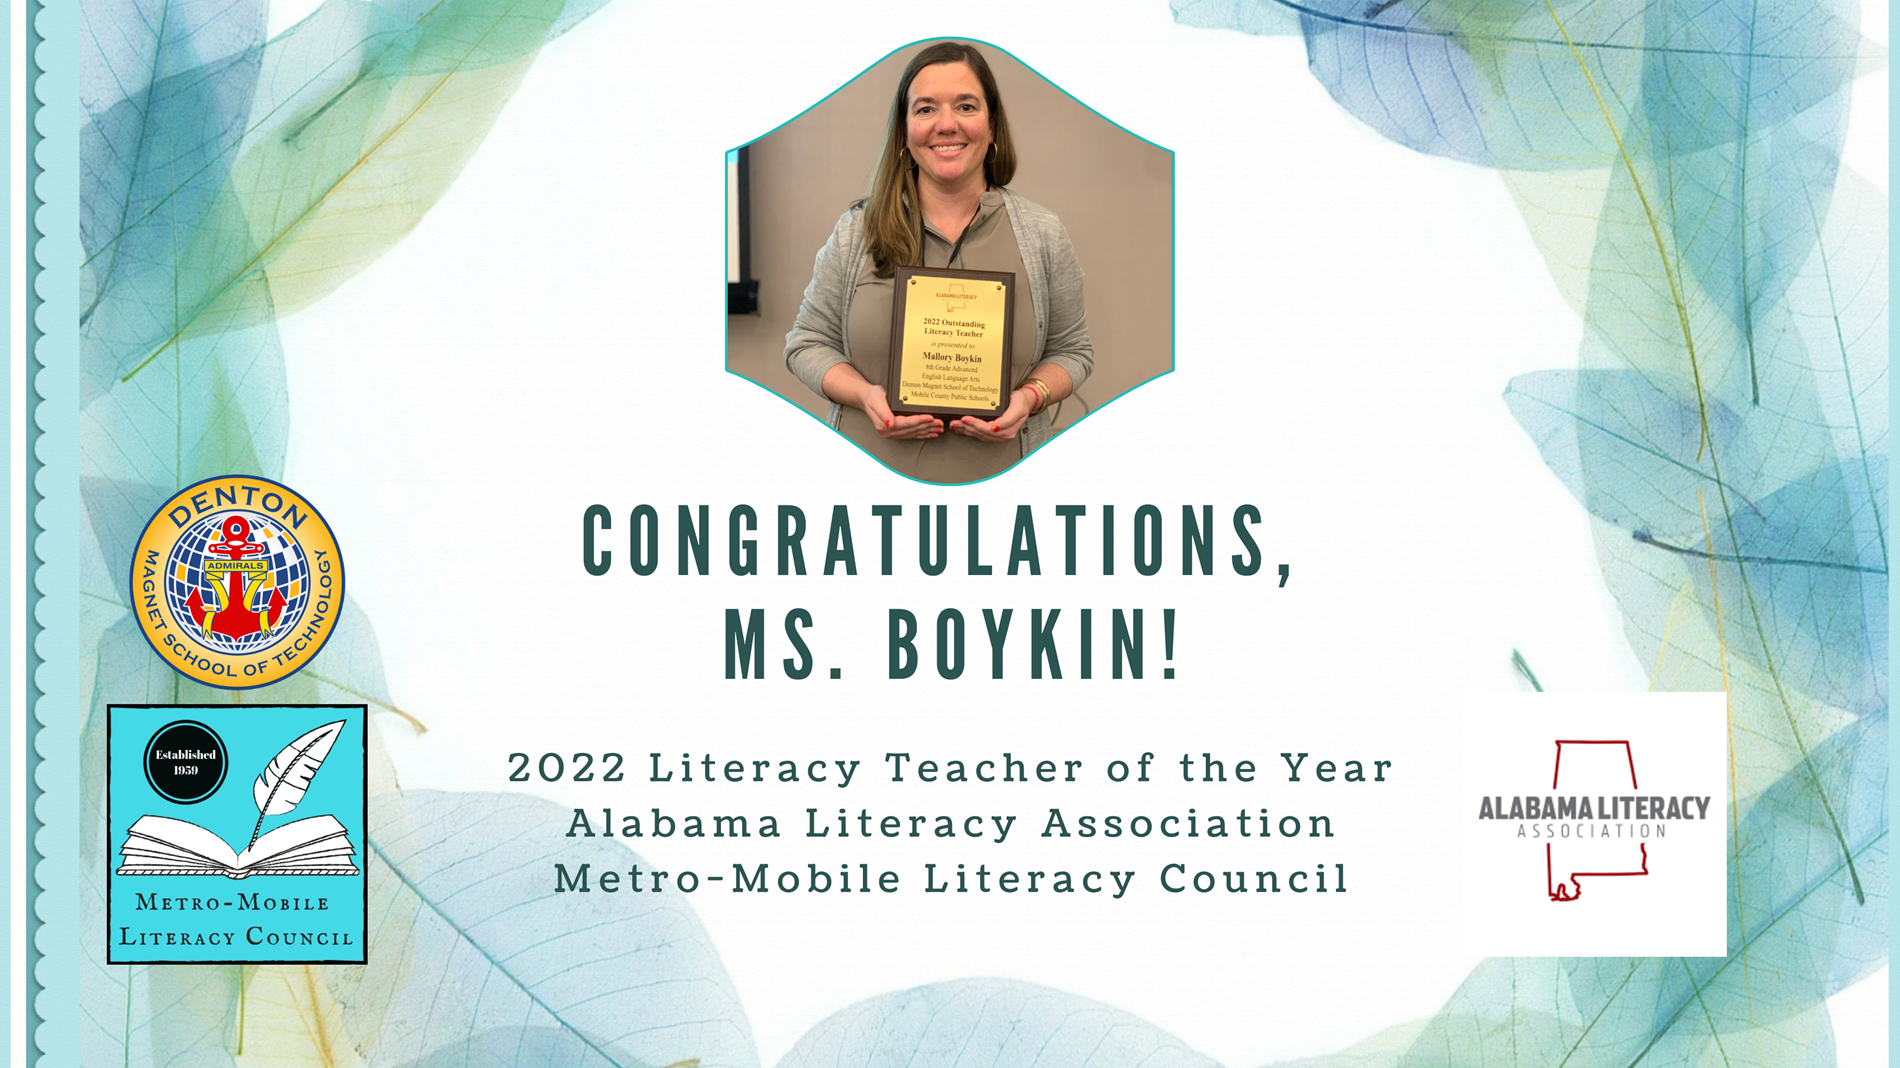 Congratulations, Ms. Boykin